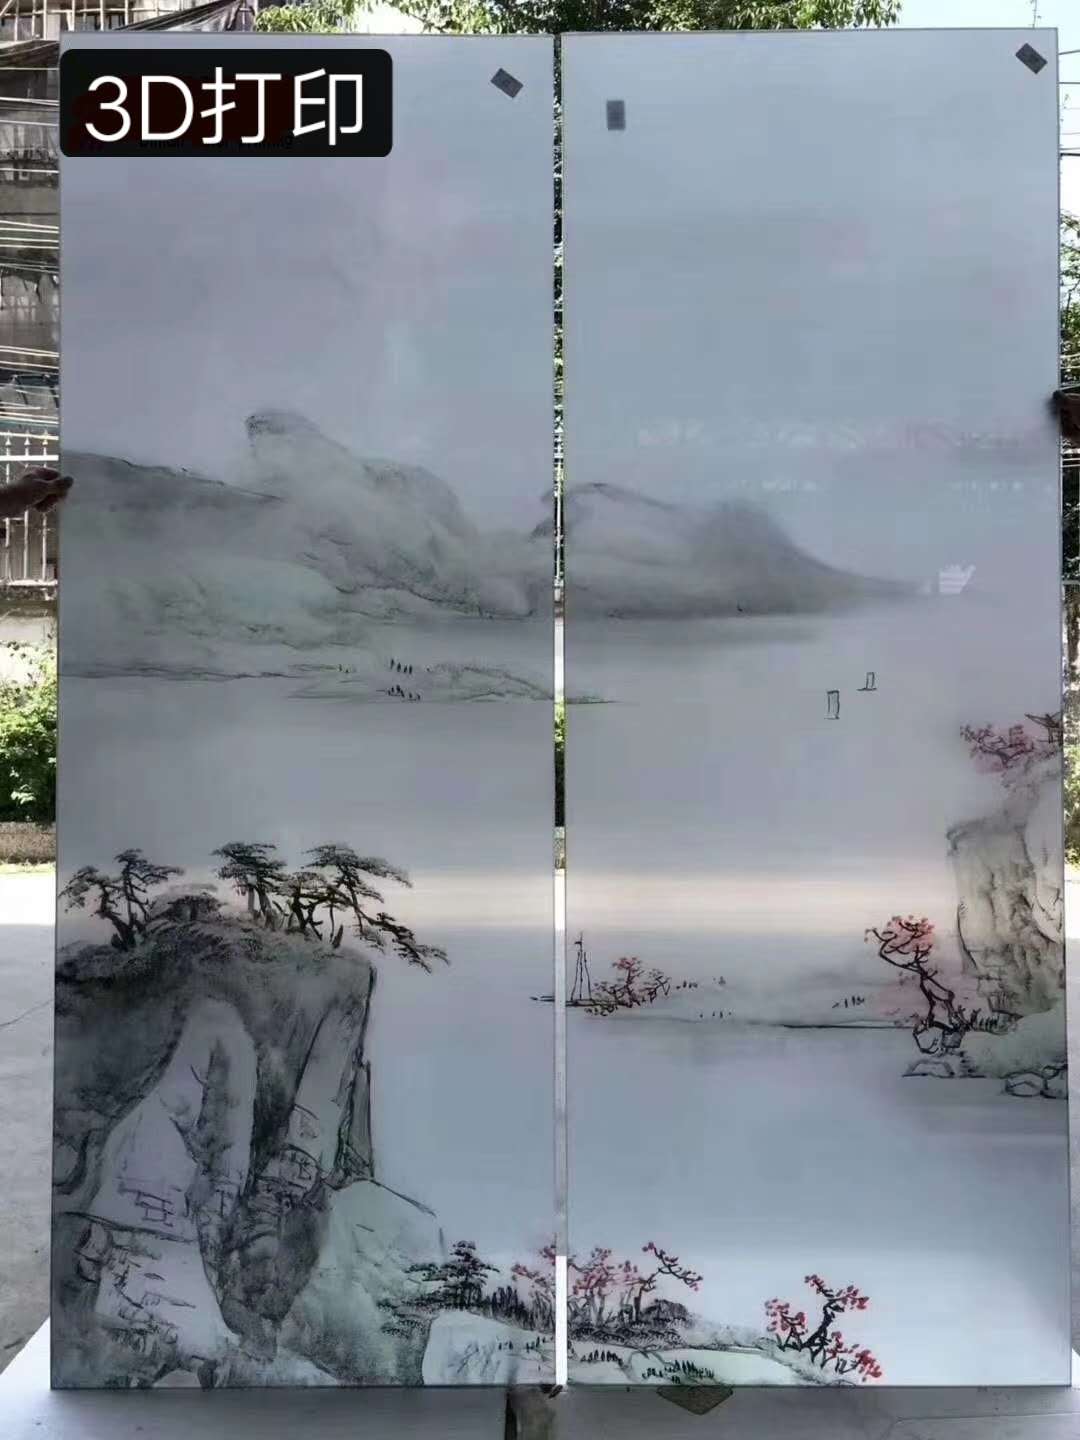 2030玻璃图案3D彩印机 背景墙深圳厂家